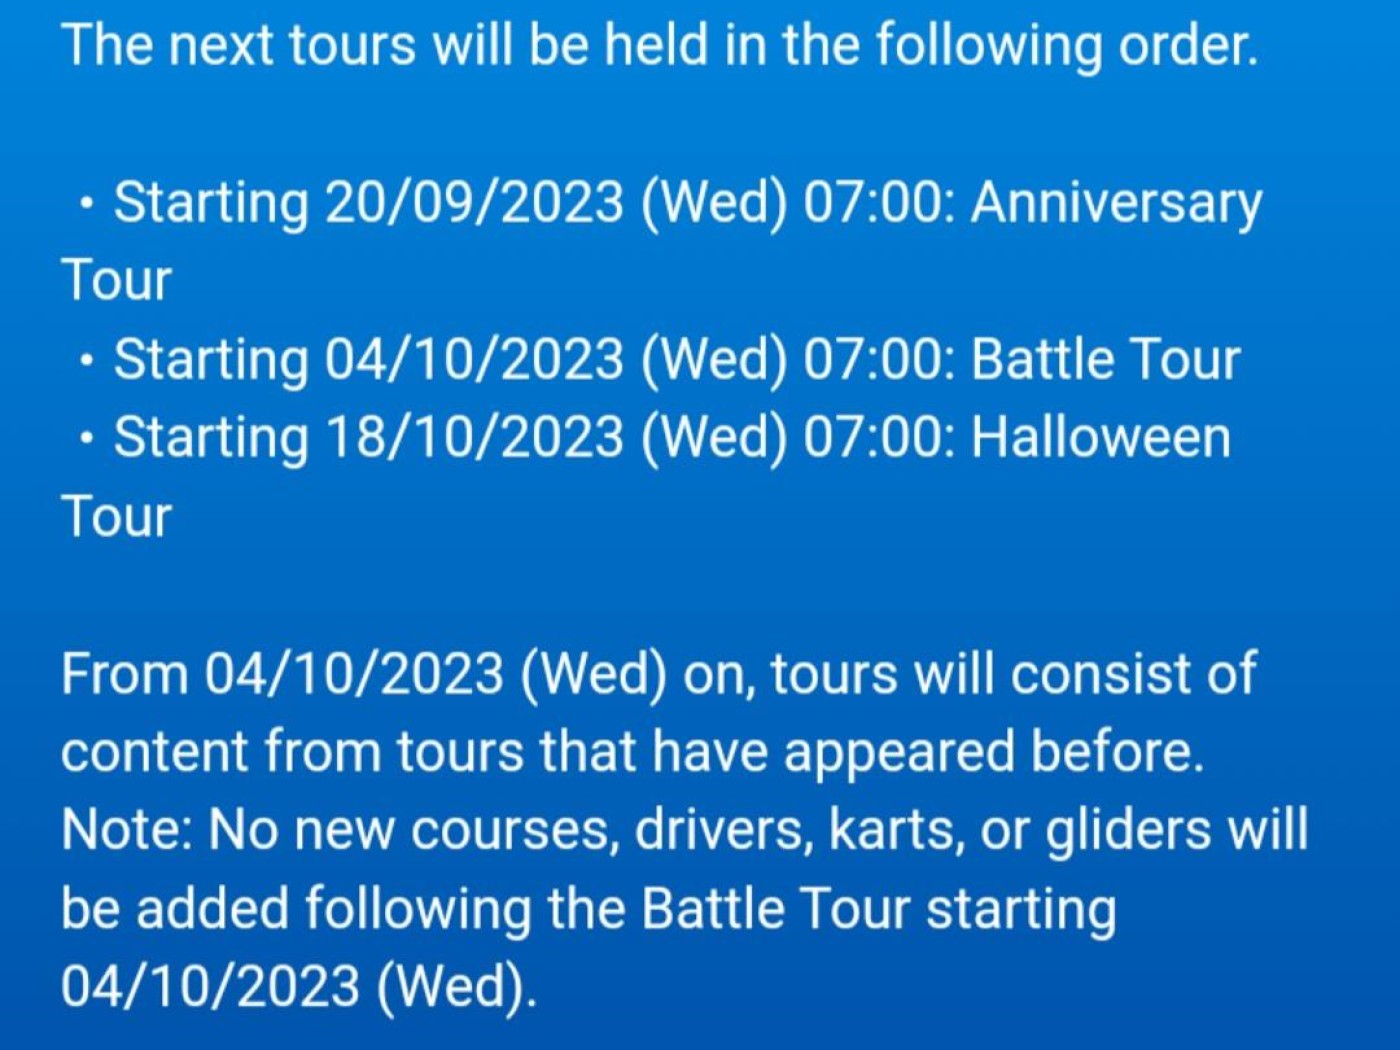 Nintendo anuncia lançamento do jogo Mario Kart Tour para 25 de setembro -  MacMagazine